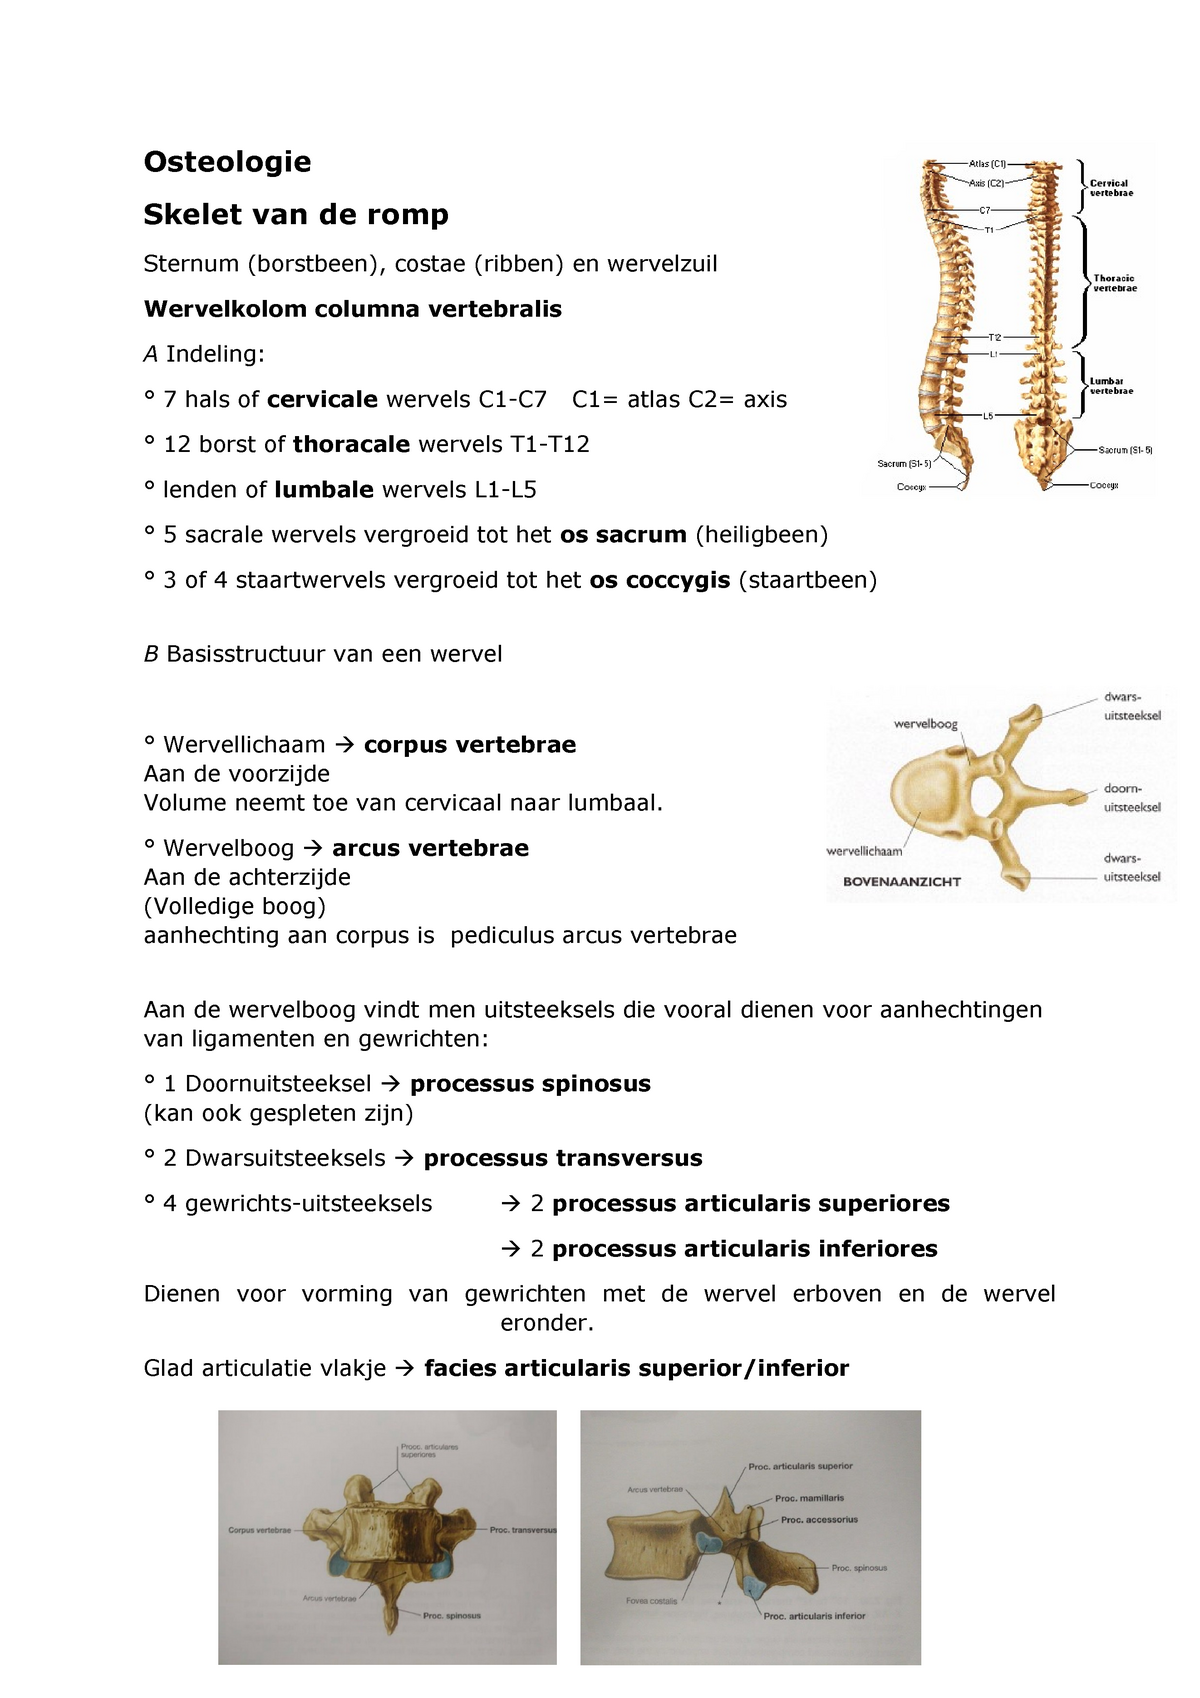 Osteologie wervels - Functionele Anatomie: Extremiteiten en romp - StuDocu